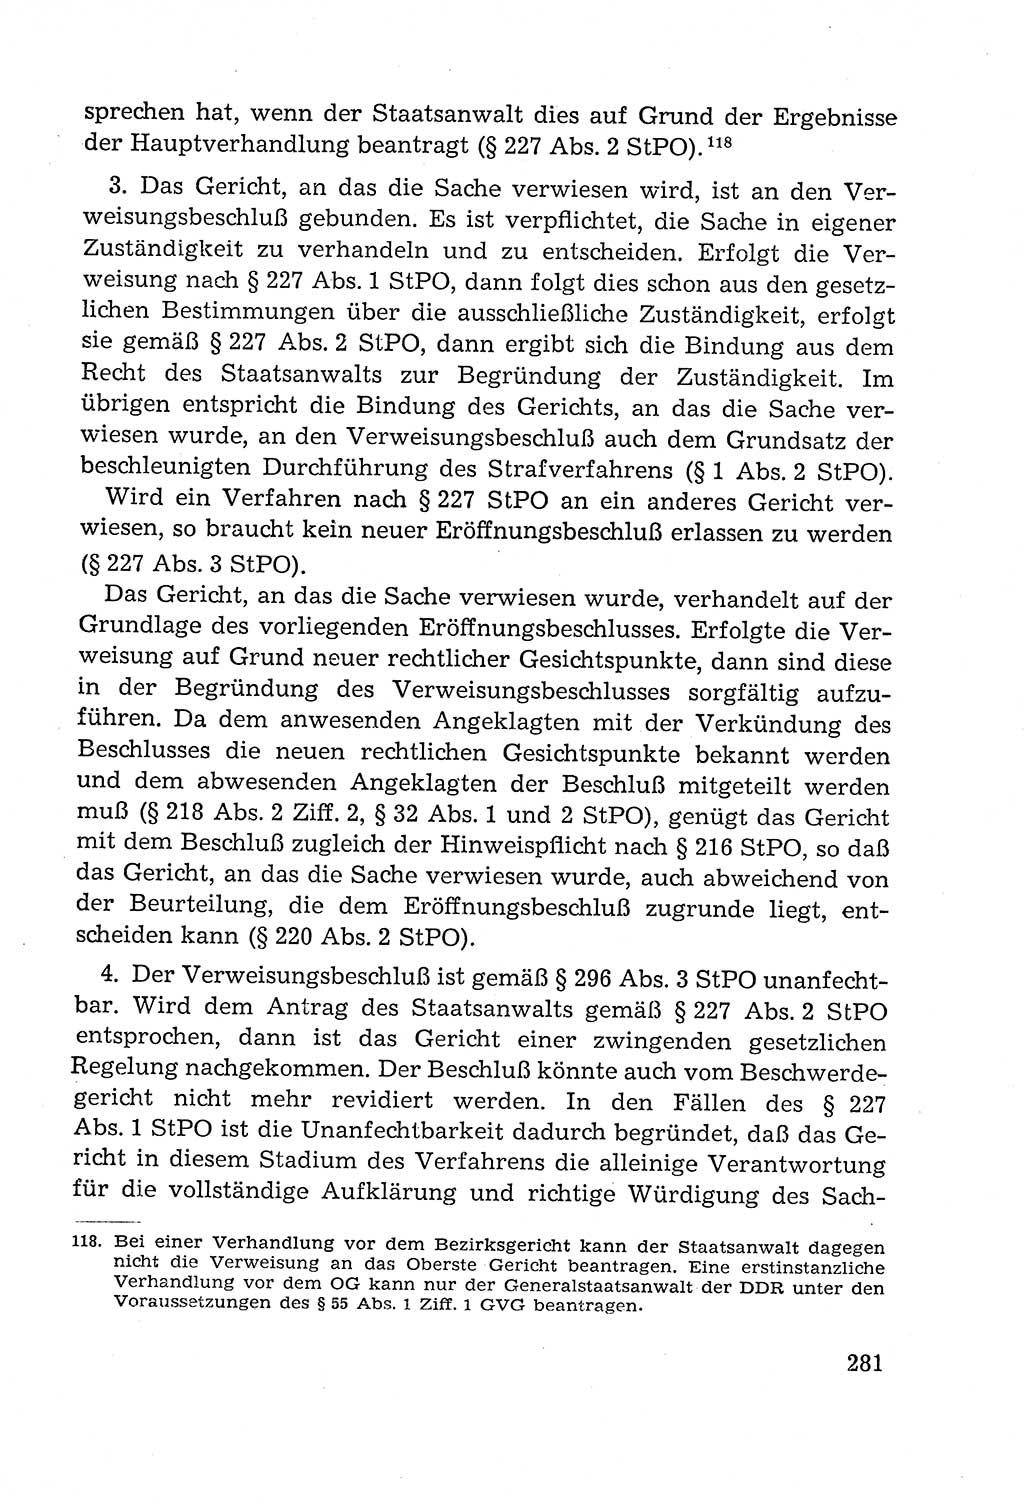 Leitfaden des Strafprozeßrechts der Deutschen Demokratischen Republik (DDR) 1959, Seite 281 (LF StPR DDR 1959, S. 281)